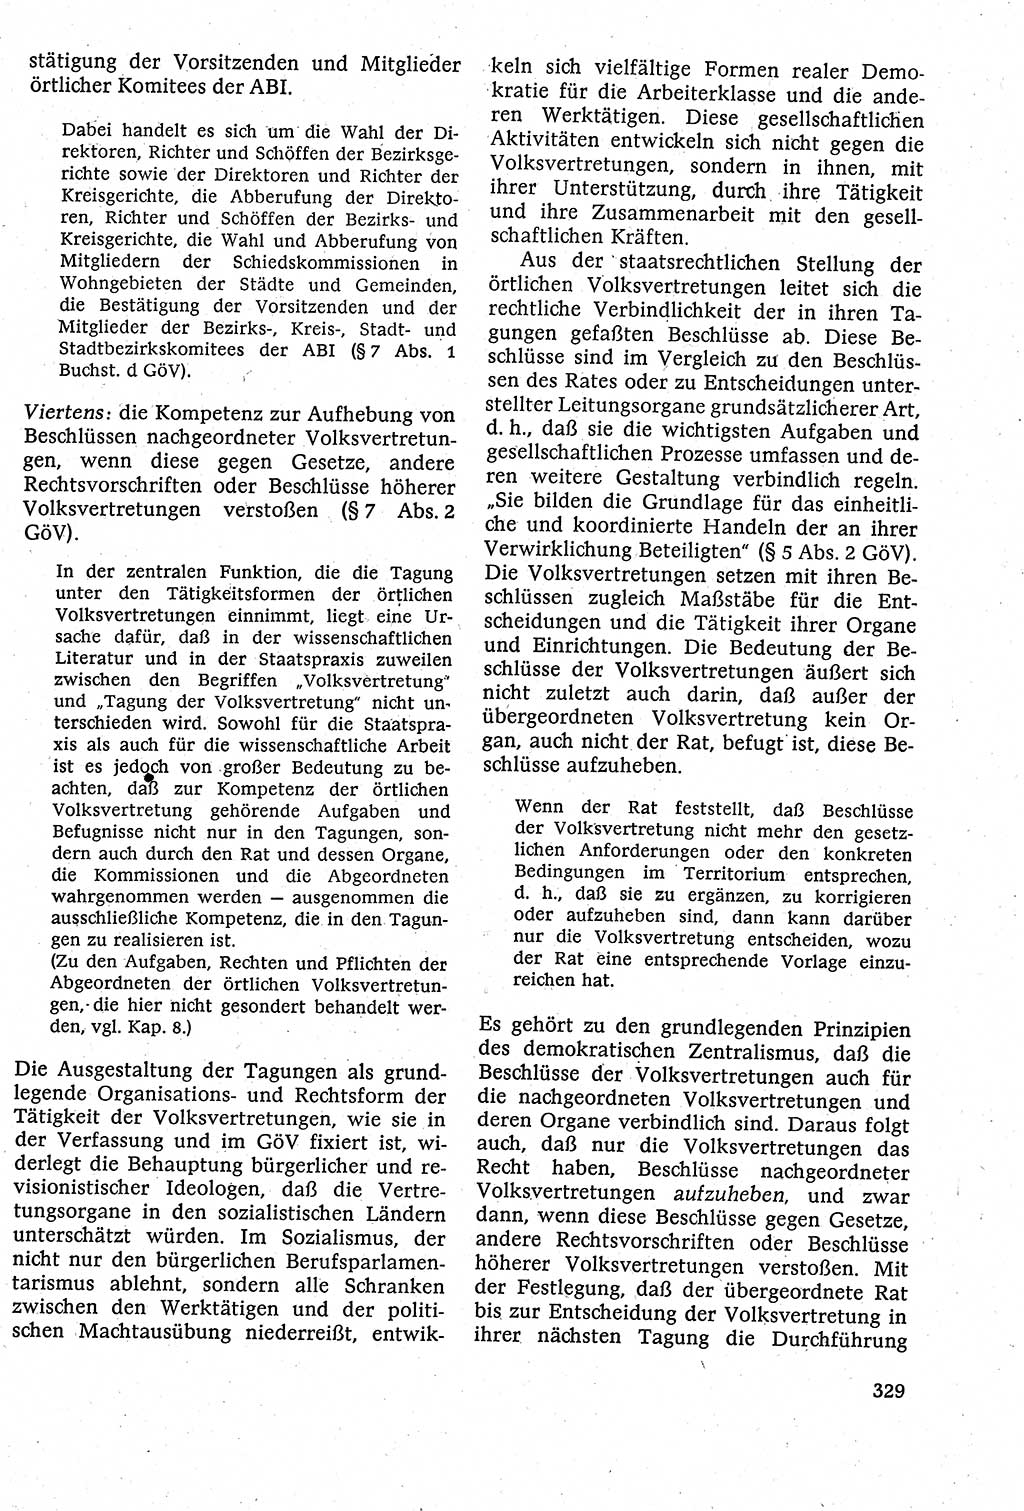 Staatsrecht der DDR [Deutsche Demokratische Republik (DDR)], Lehrbuch 1984, Seite 329 (St.-R. DDR Lb. 1984, S. 329)